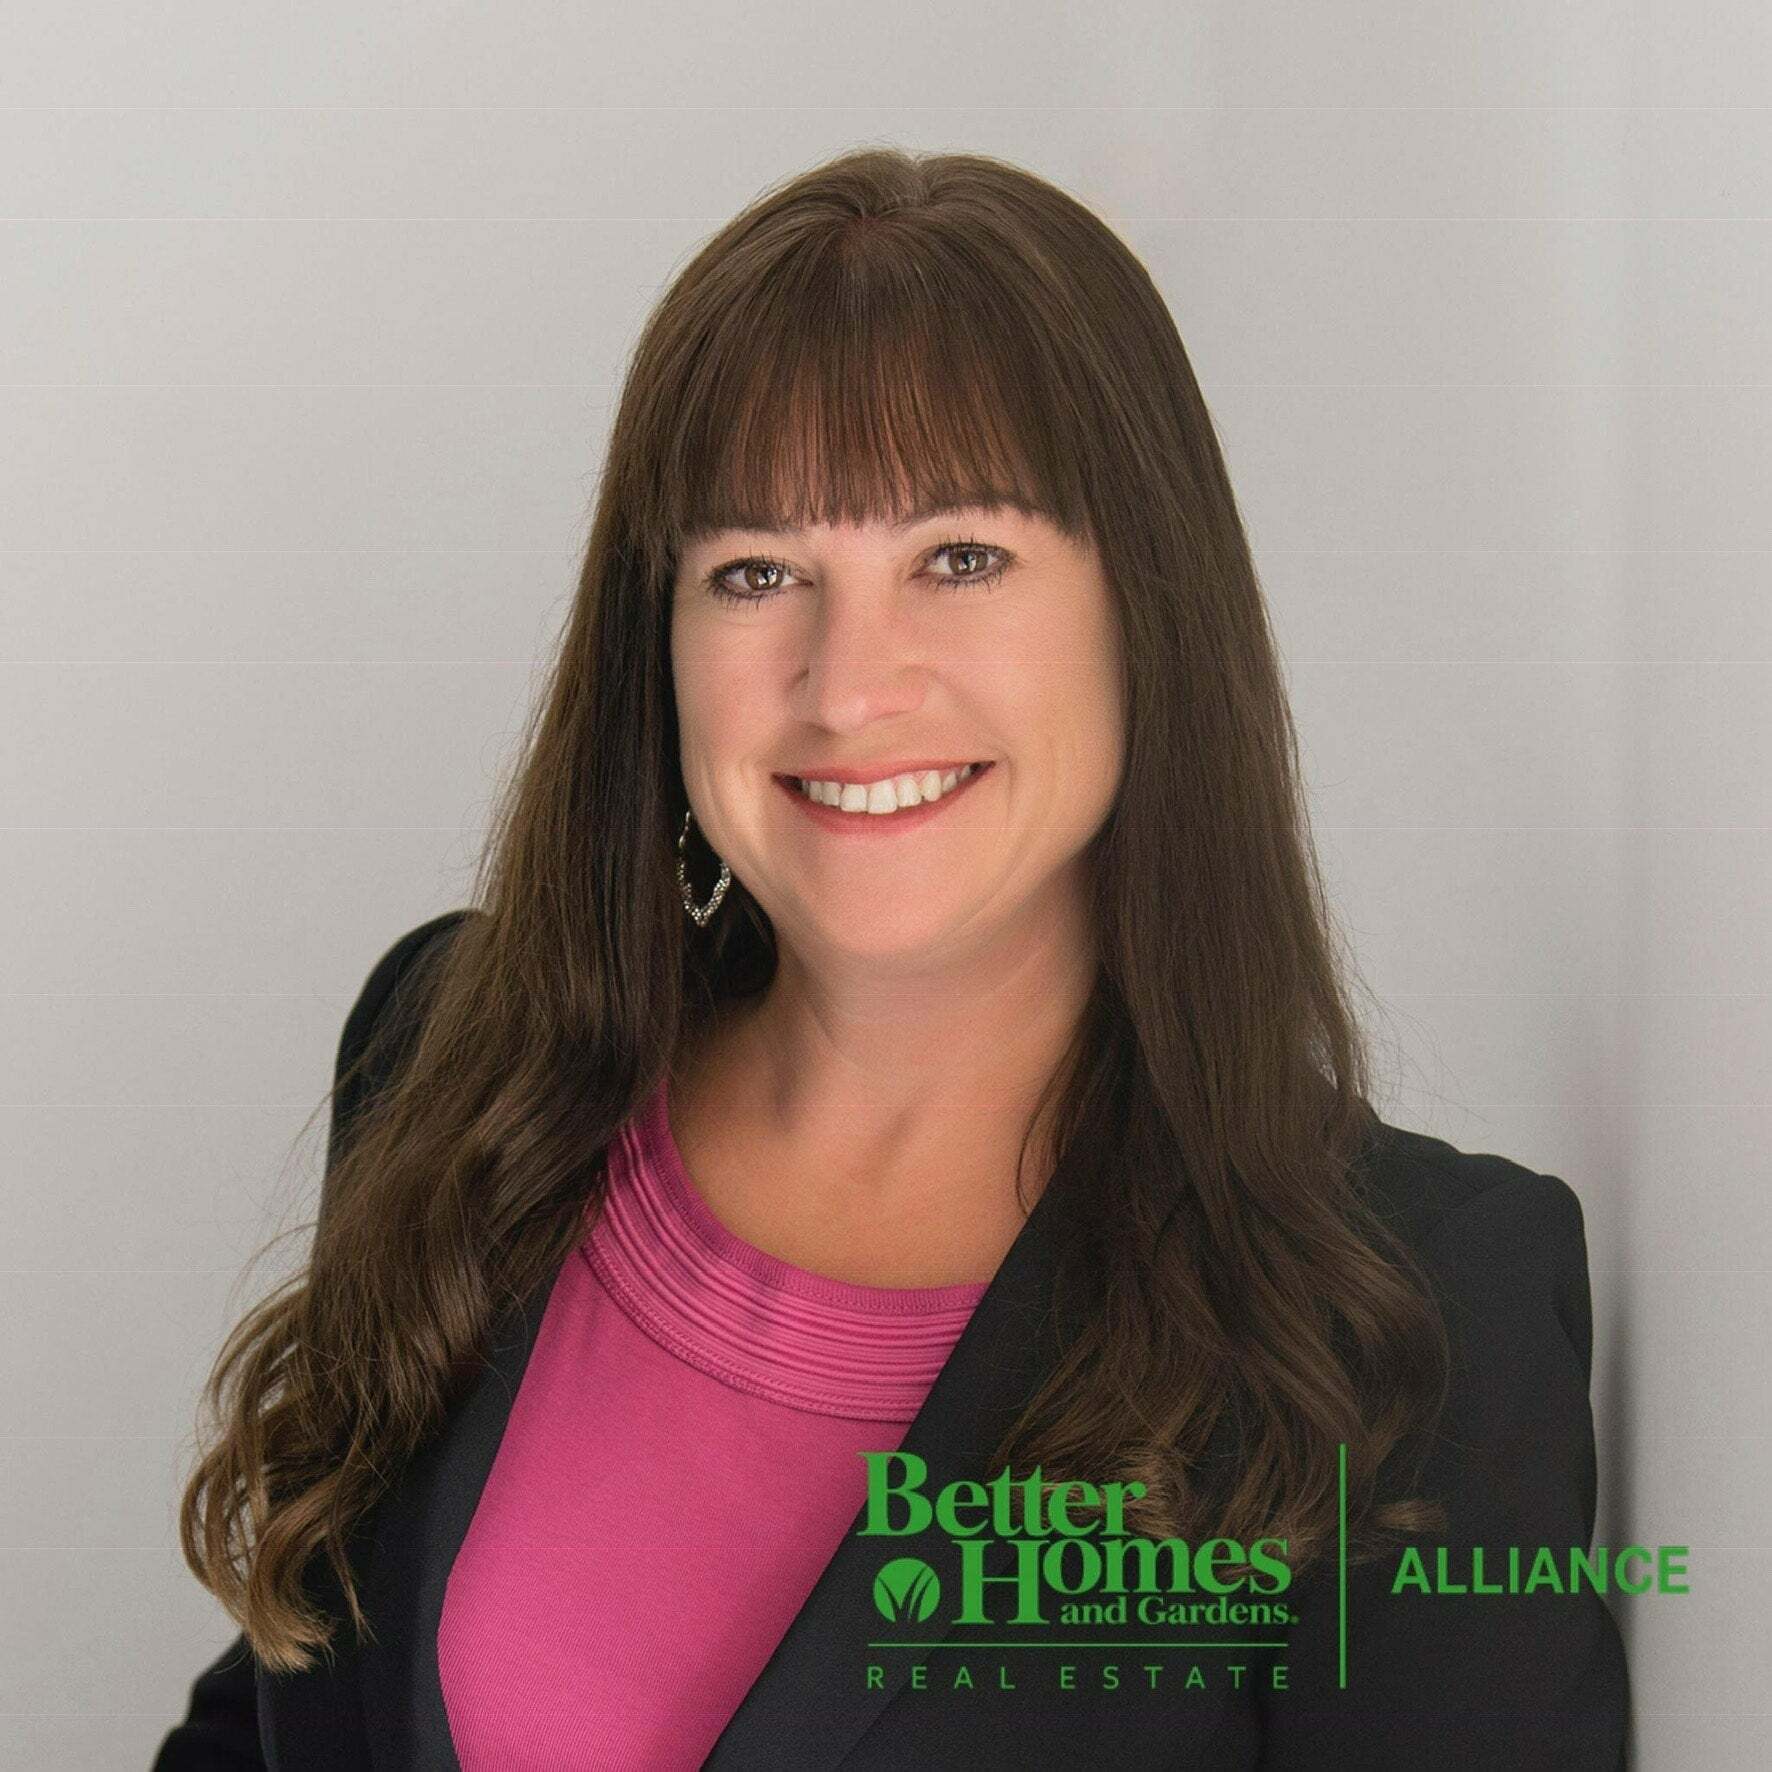 Mandy Reitmayer, Real Estate Salesperson in Wichita, Alliance